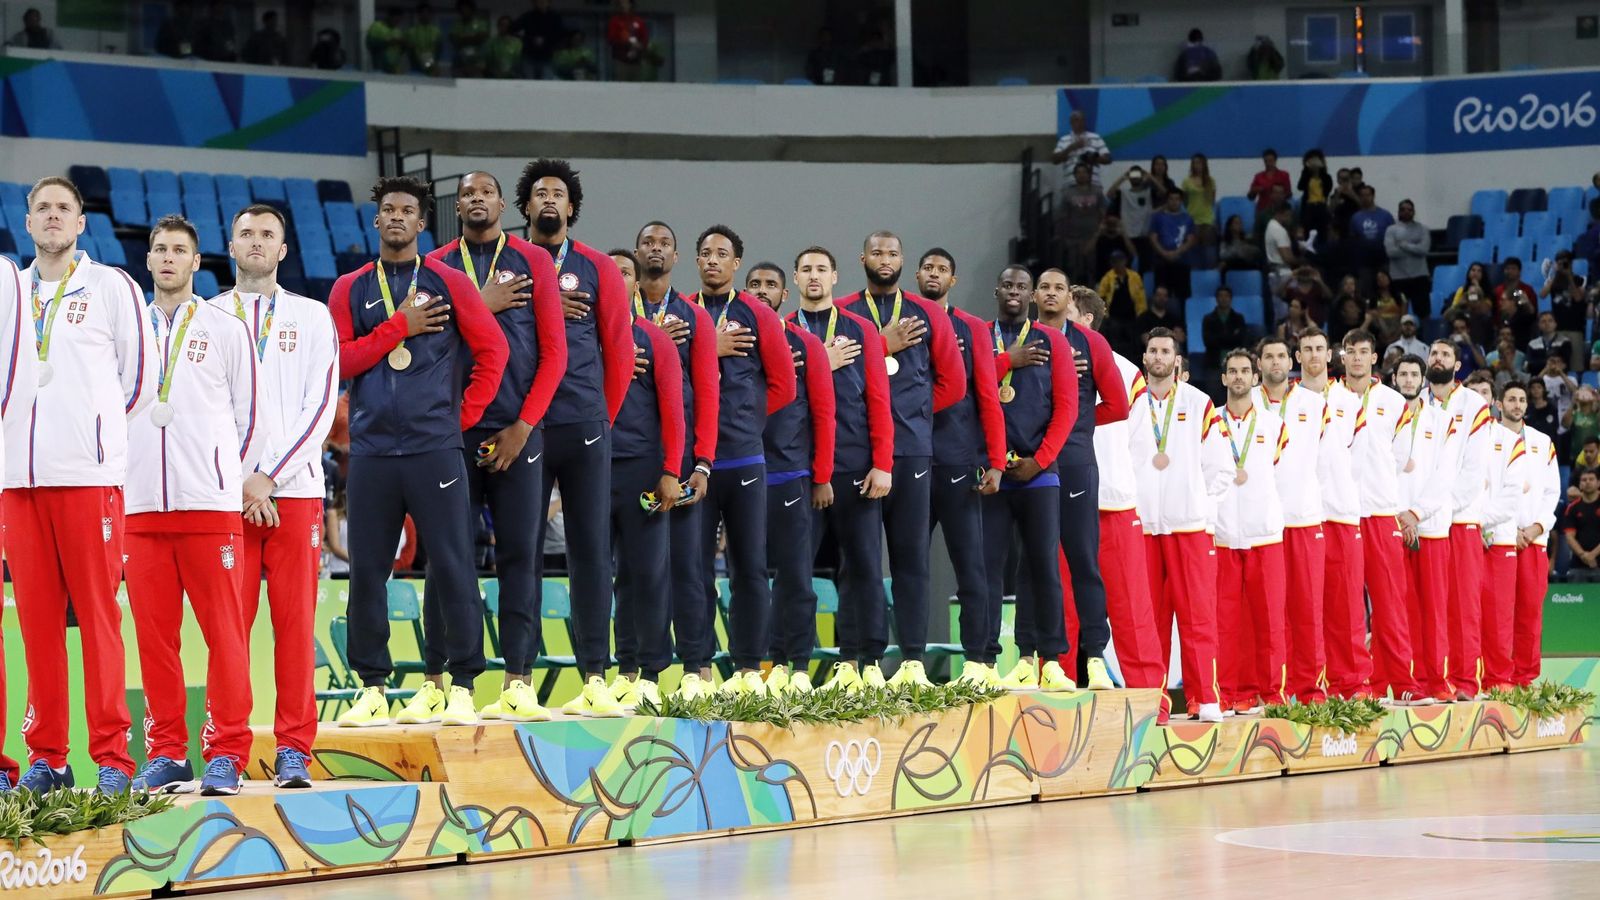 Foto: Podio final de la competición de baloncesto masculino, en que España ganó la medalla de bronce. (EFE)